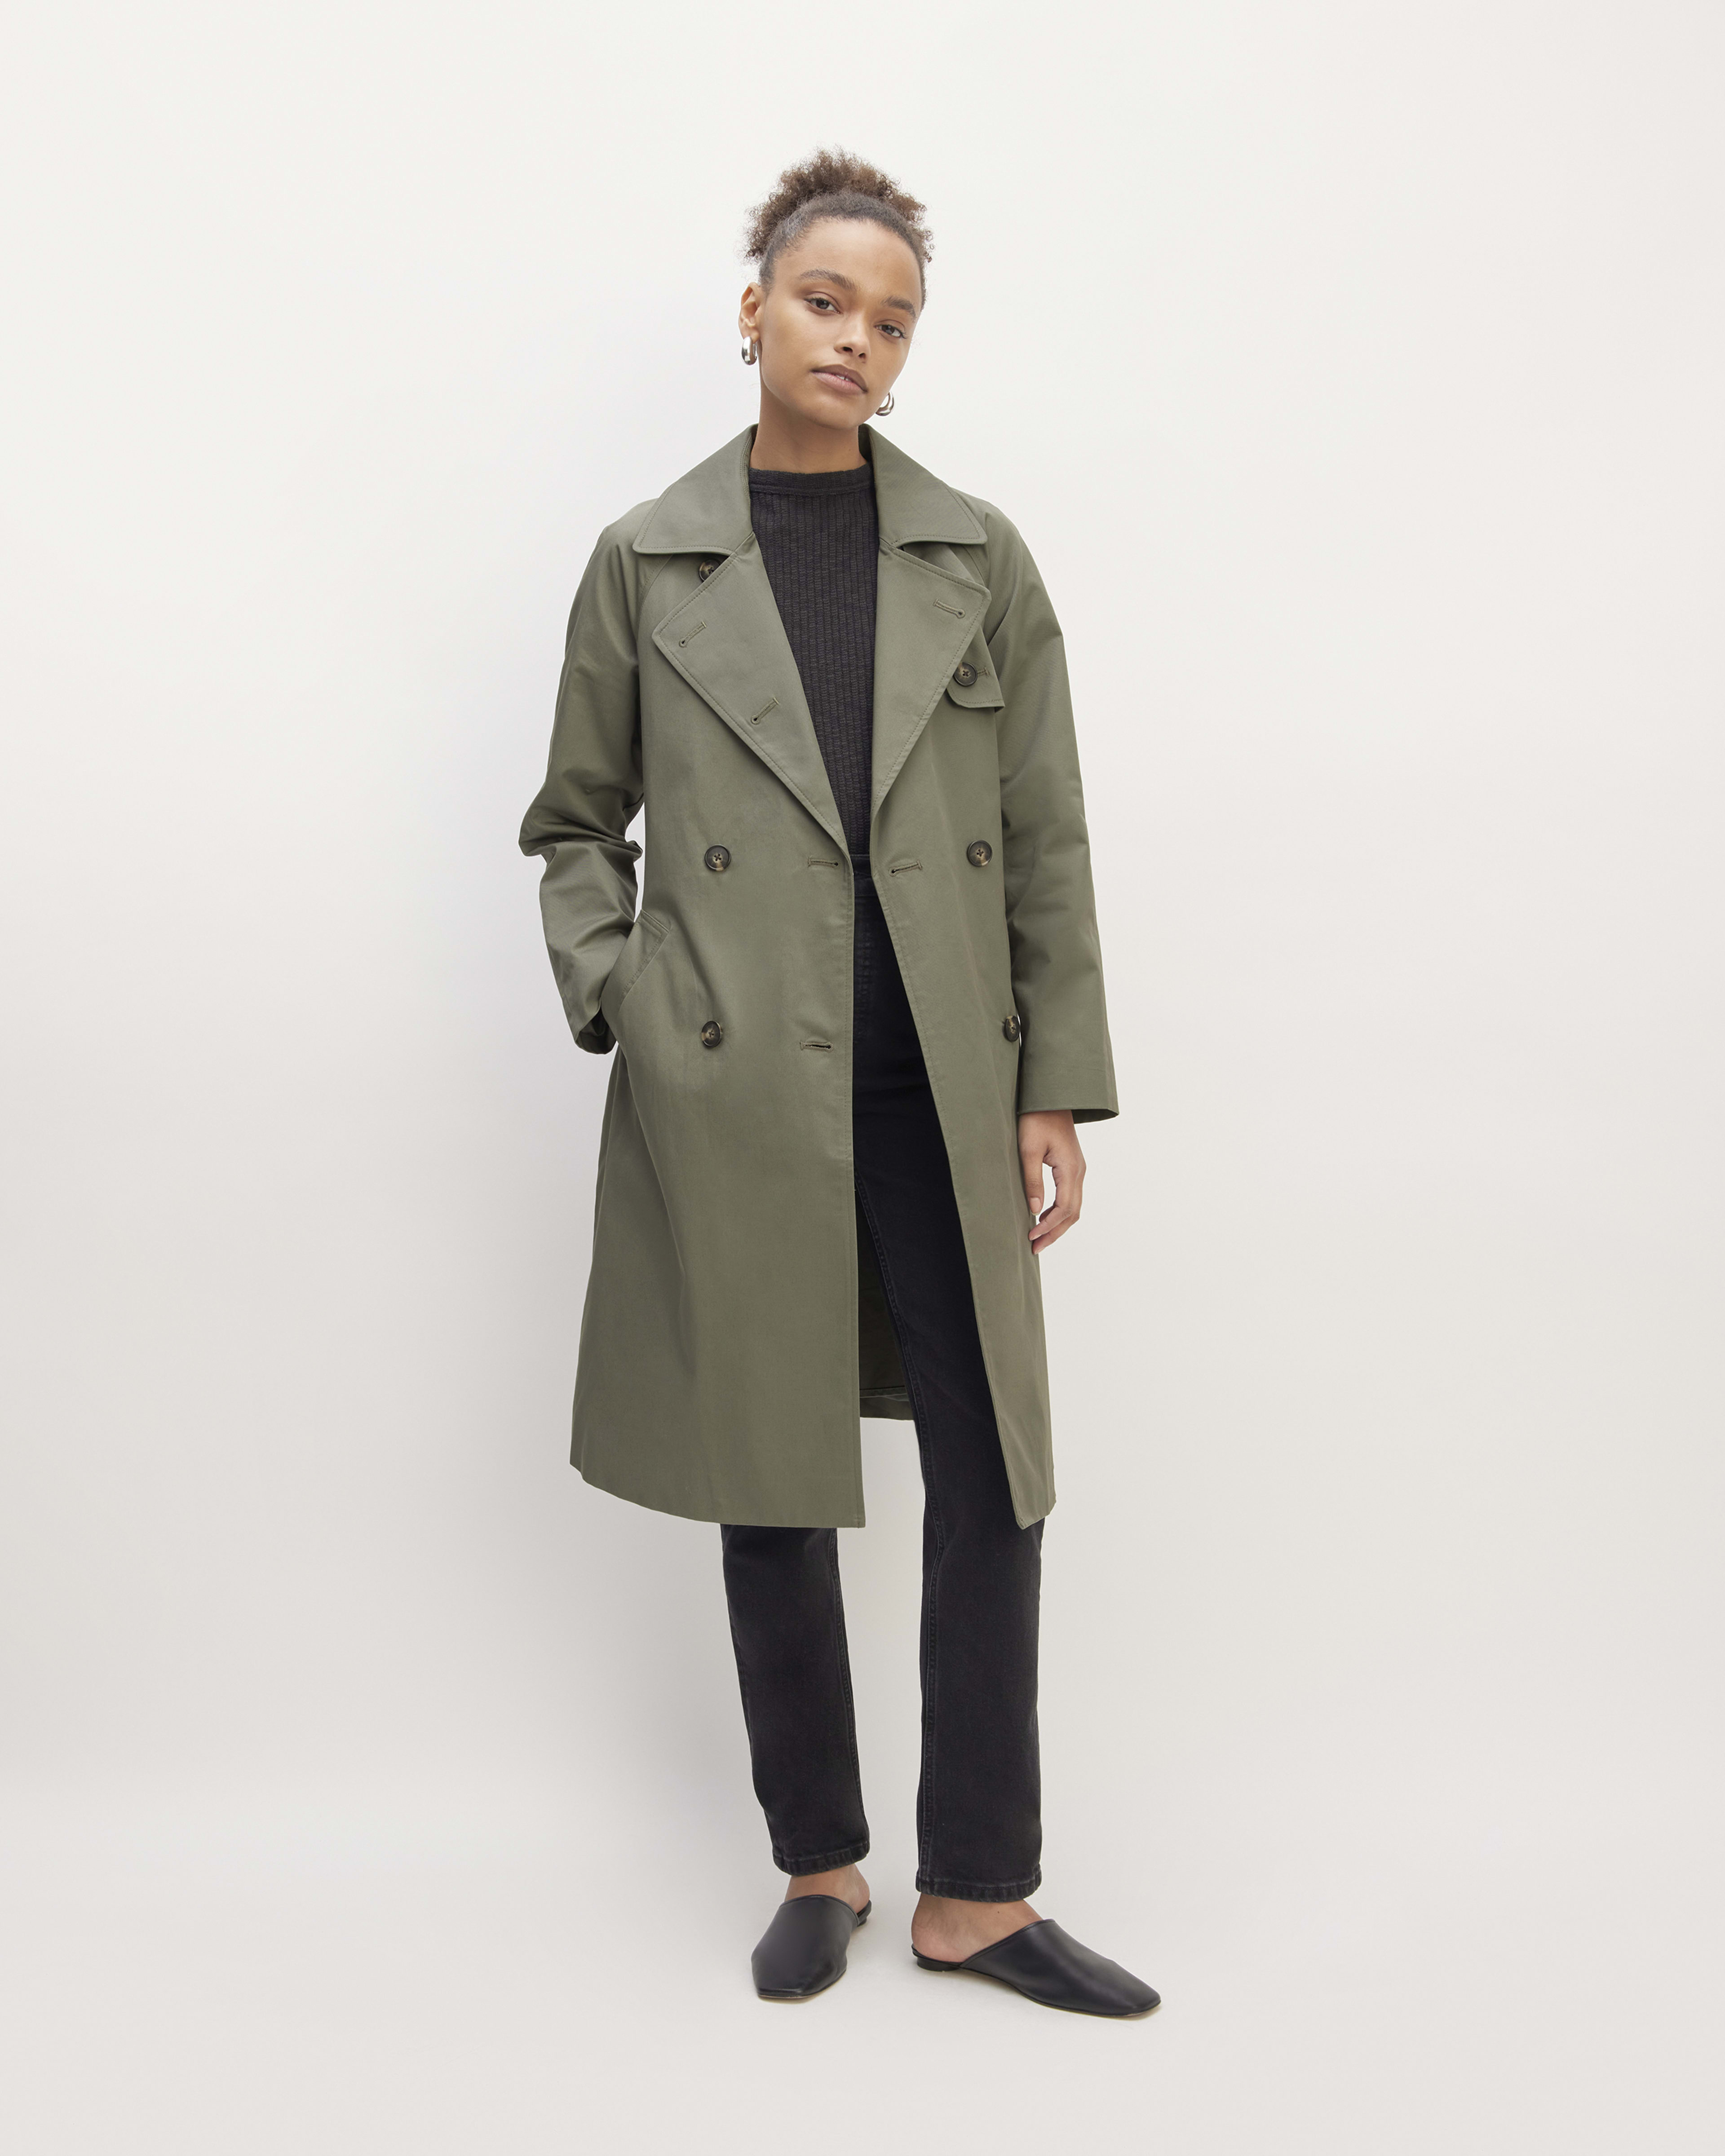 Women's Outerwear - Women's Coats, Jackets & Blazers